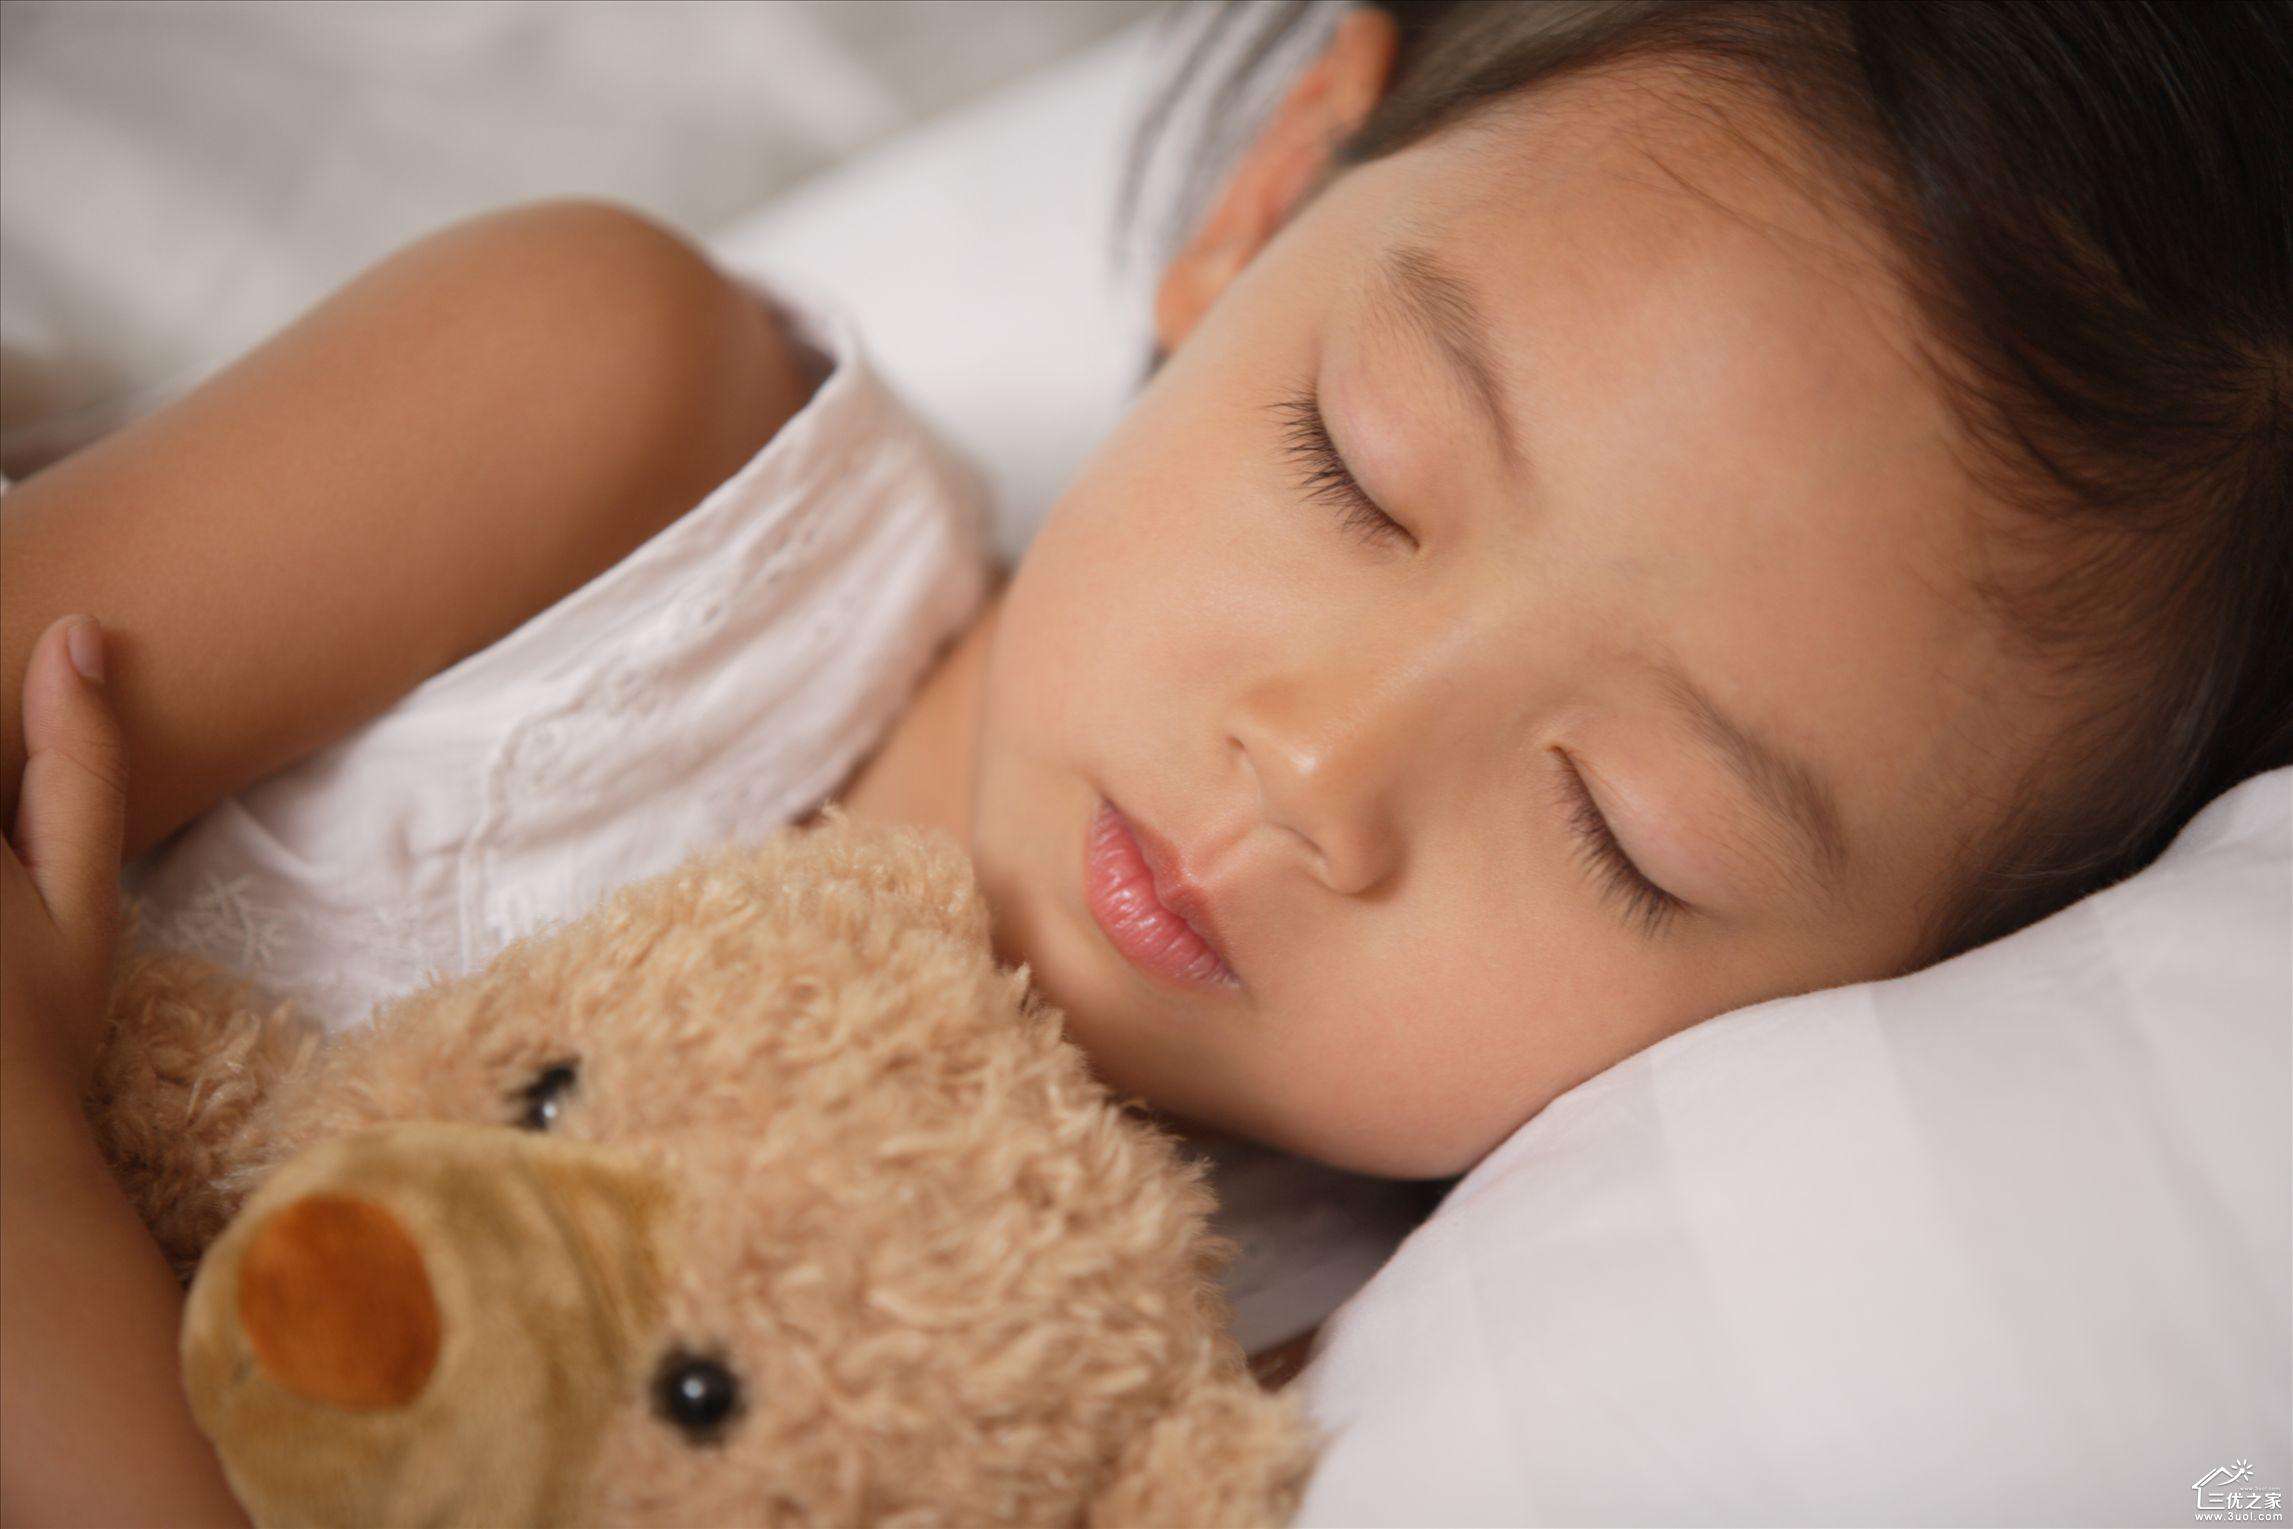 夏季孩子往往睡不好,天气逐渐变热,如何提高孩子的睡眠质量